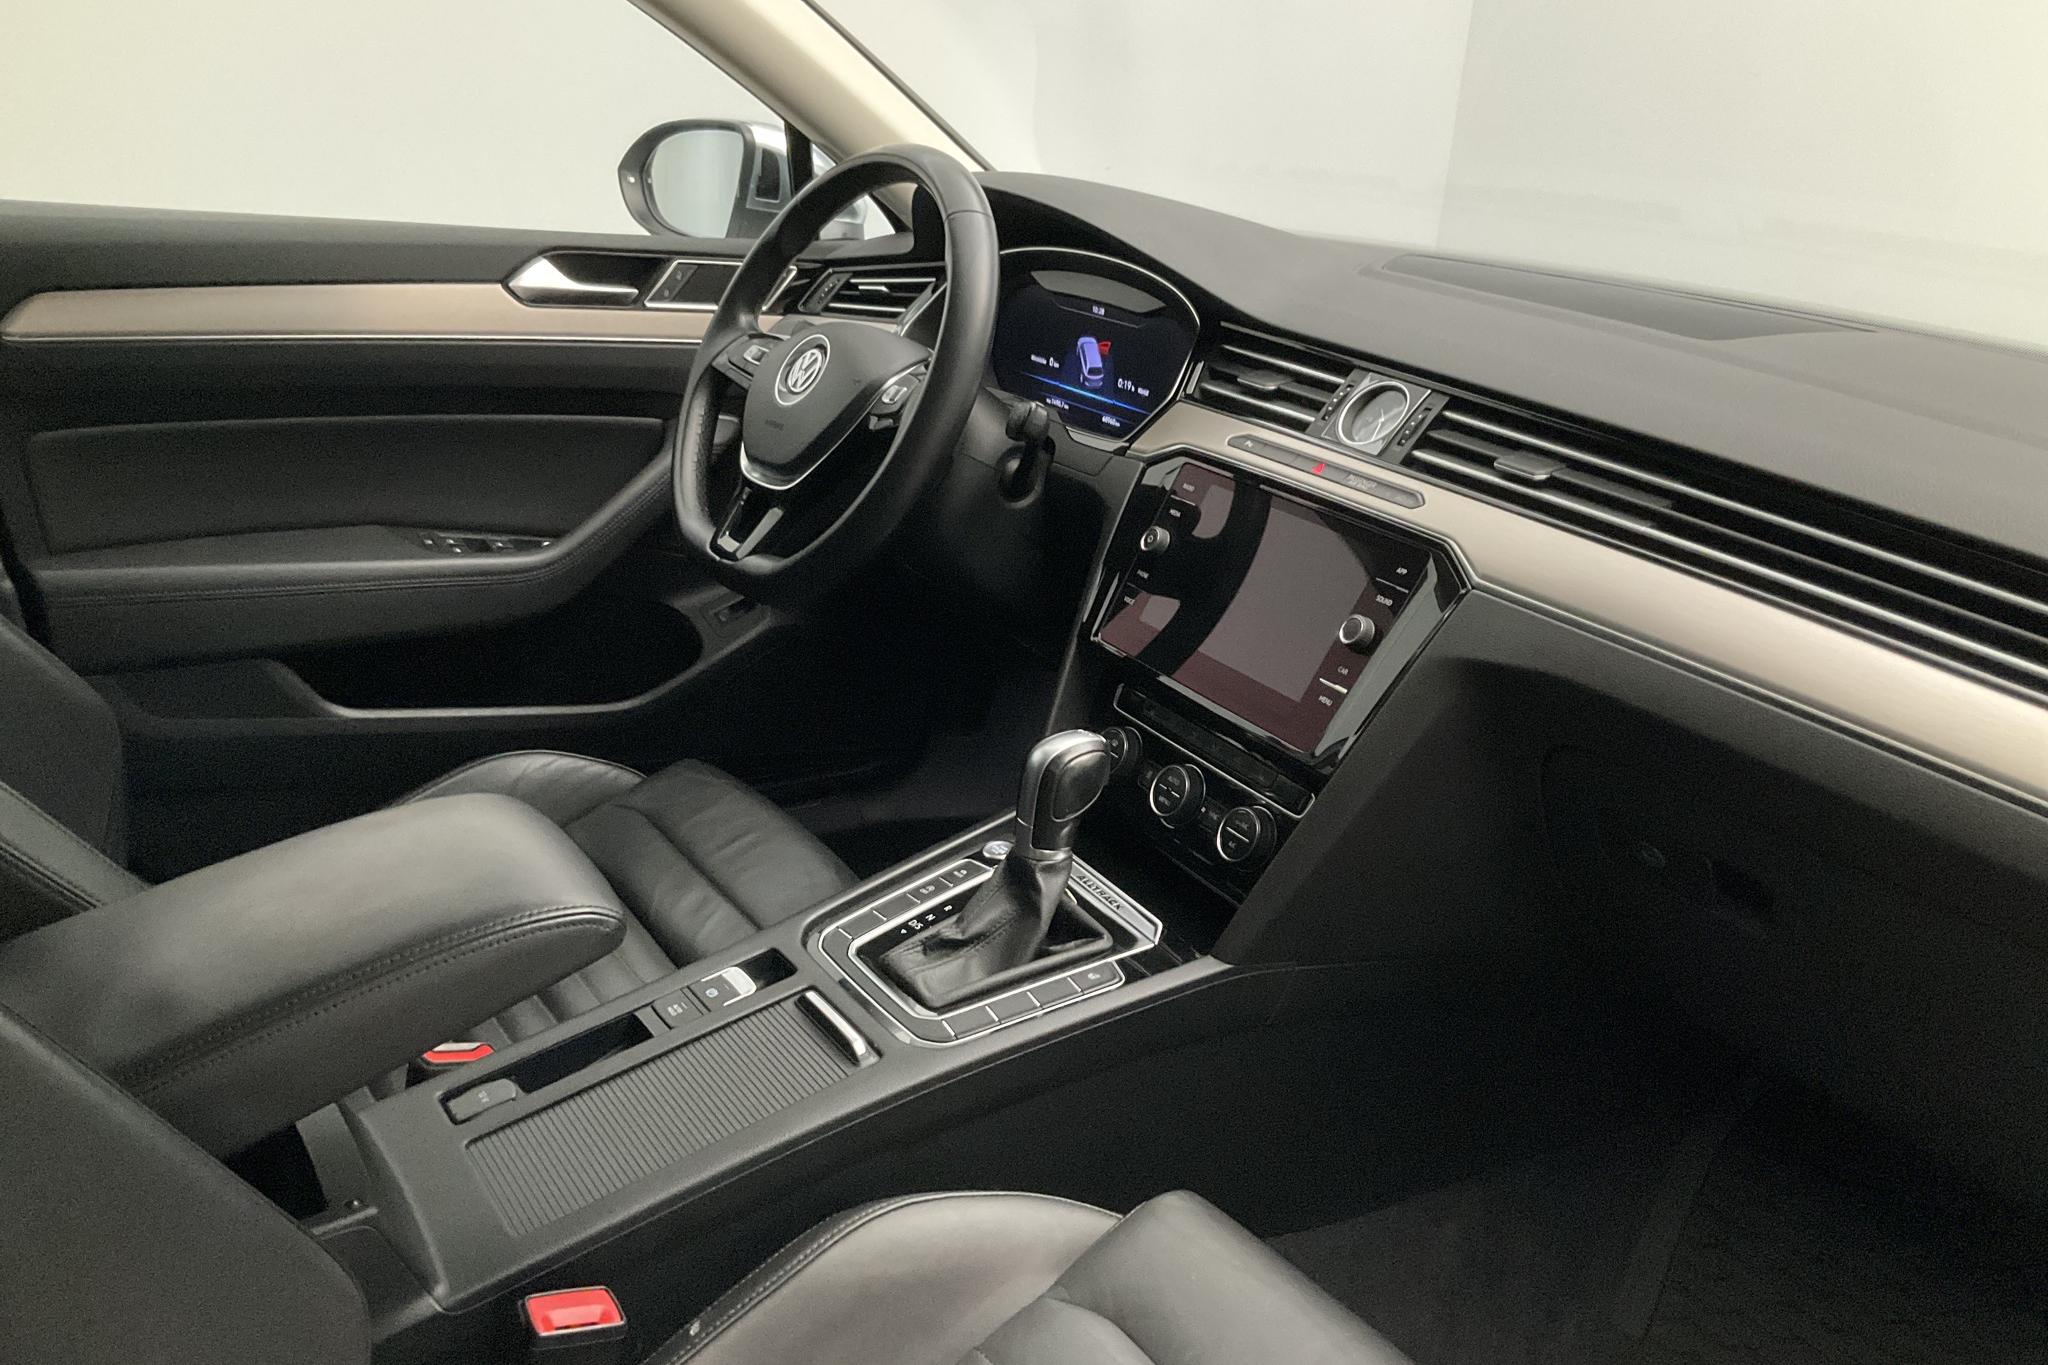 VW Passat Alltrack 2.0 TDI 4MOTION (190hk) - 68 960 km - Automatic - white - 2019